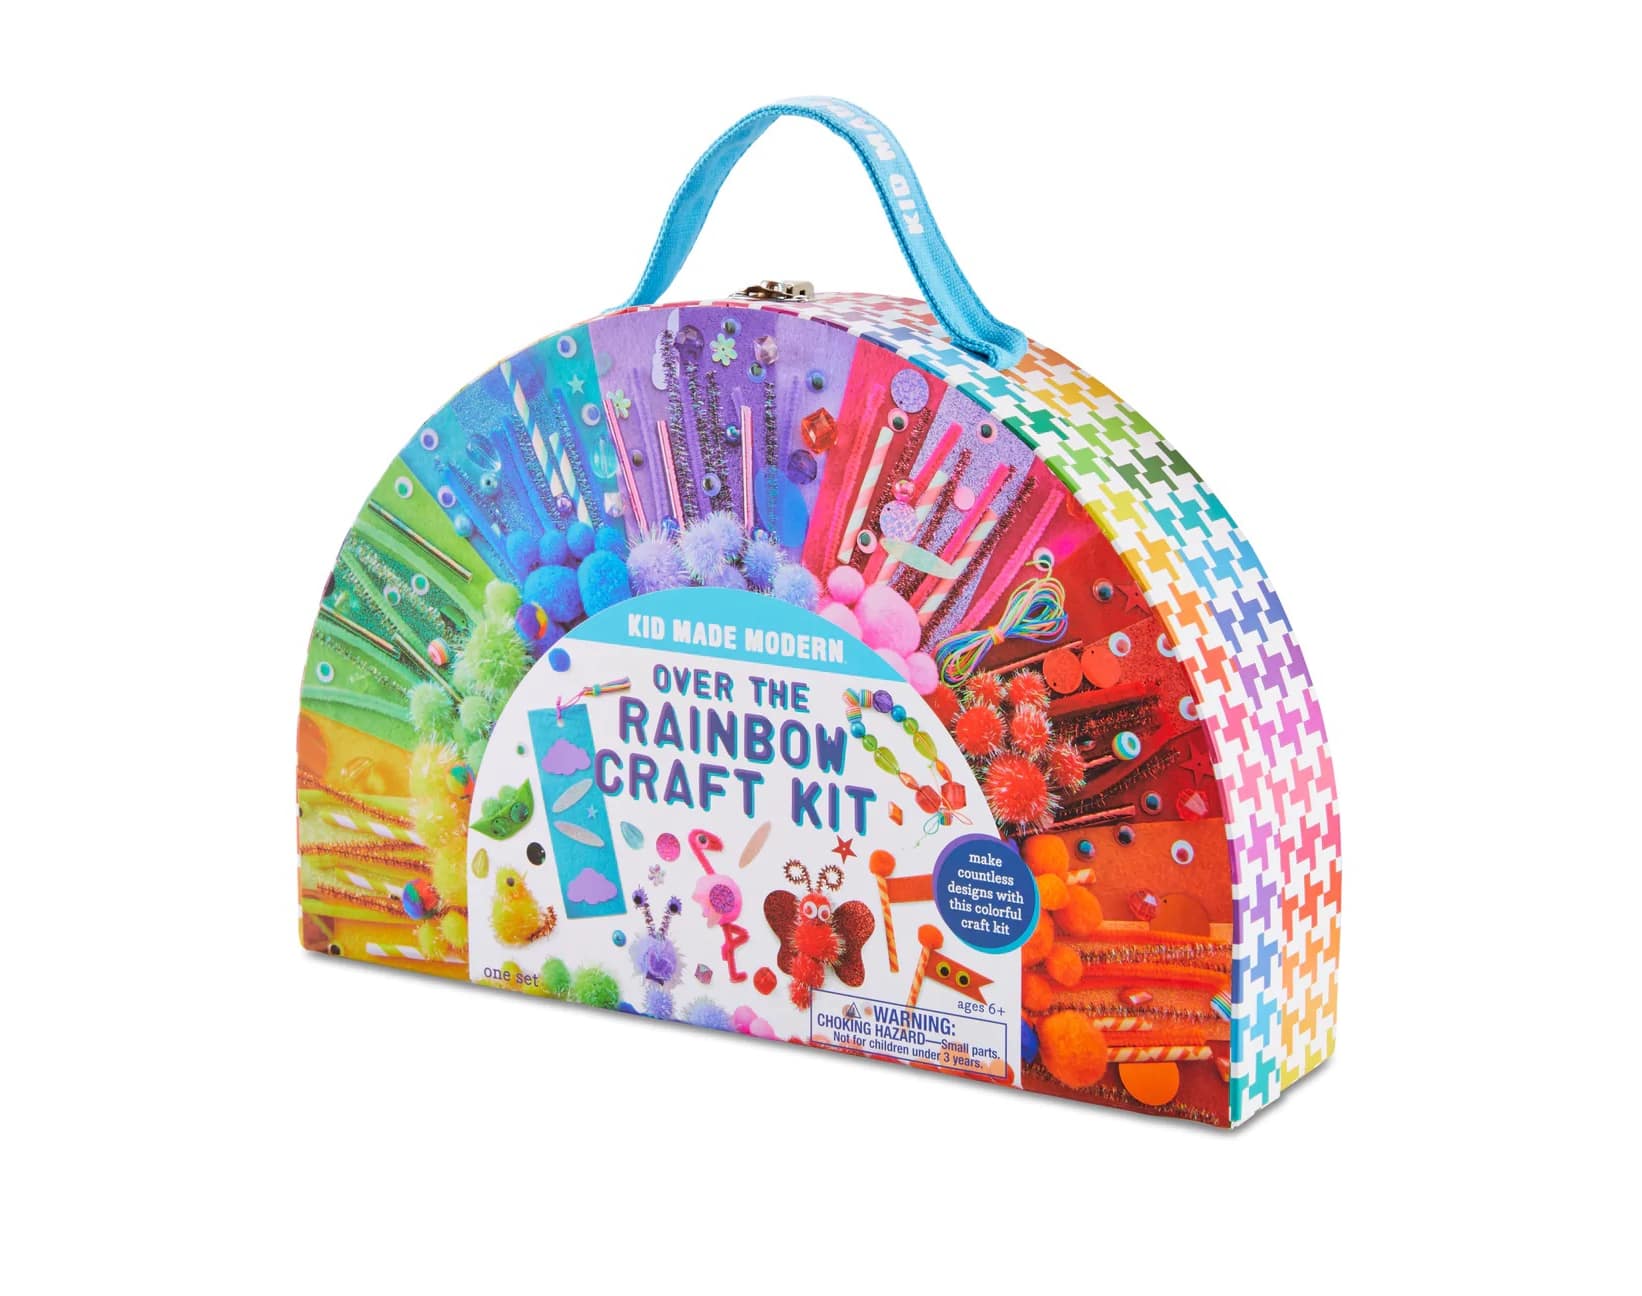 http://tenlittle.com/cdn/shop/products/Ten-Little-Kids-Baby-Arts-Crafts-Kid-Made-Modern-Rainbow-Craft-Kit3.jpg?v=1675444452